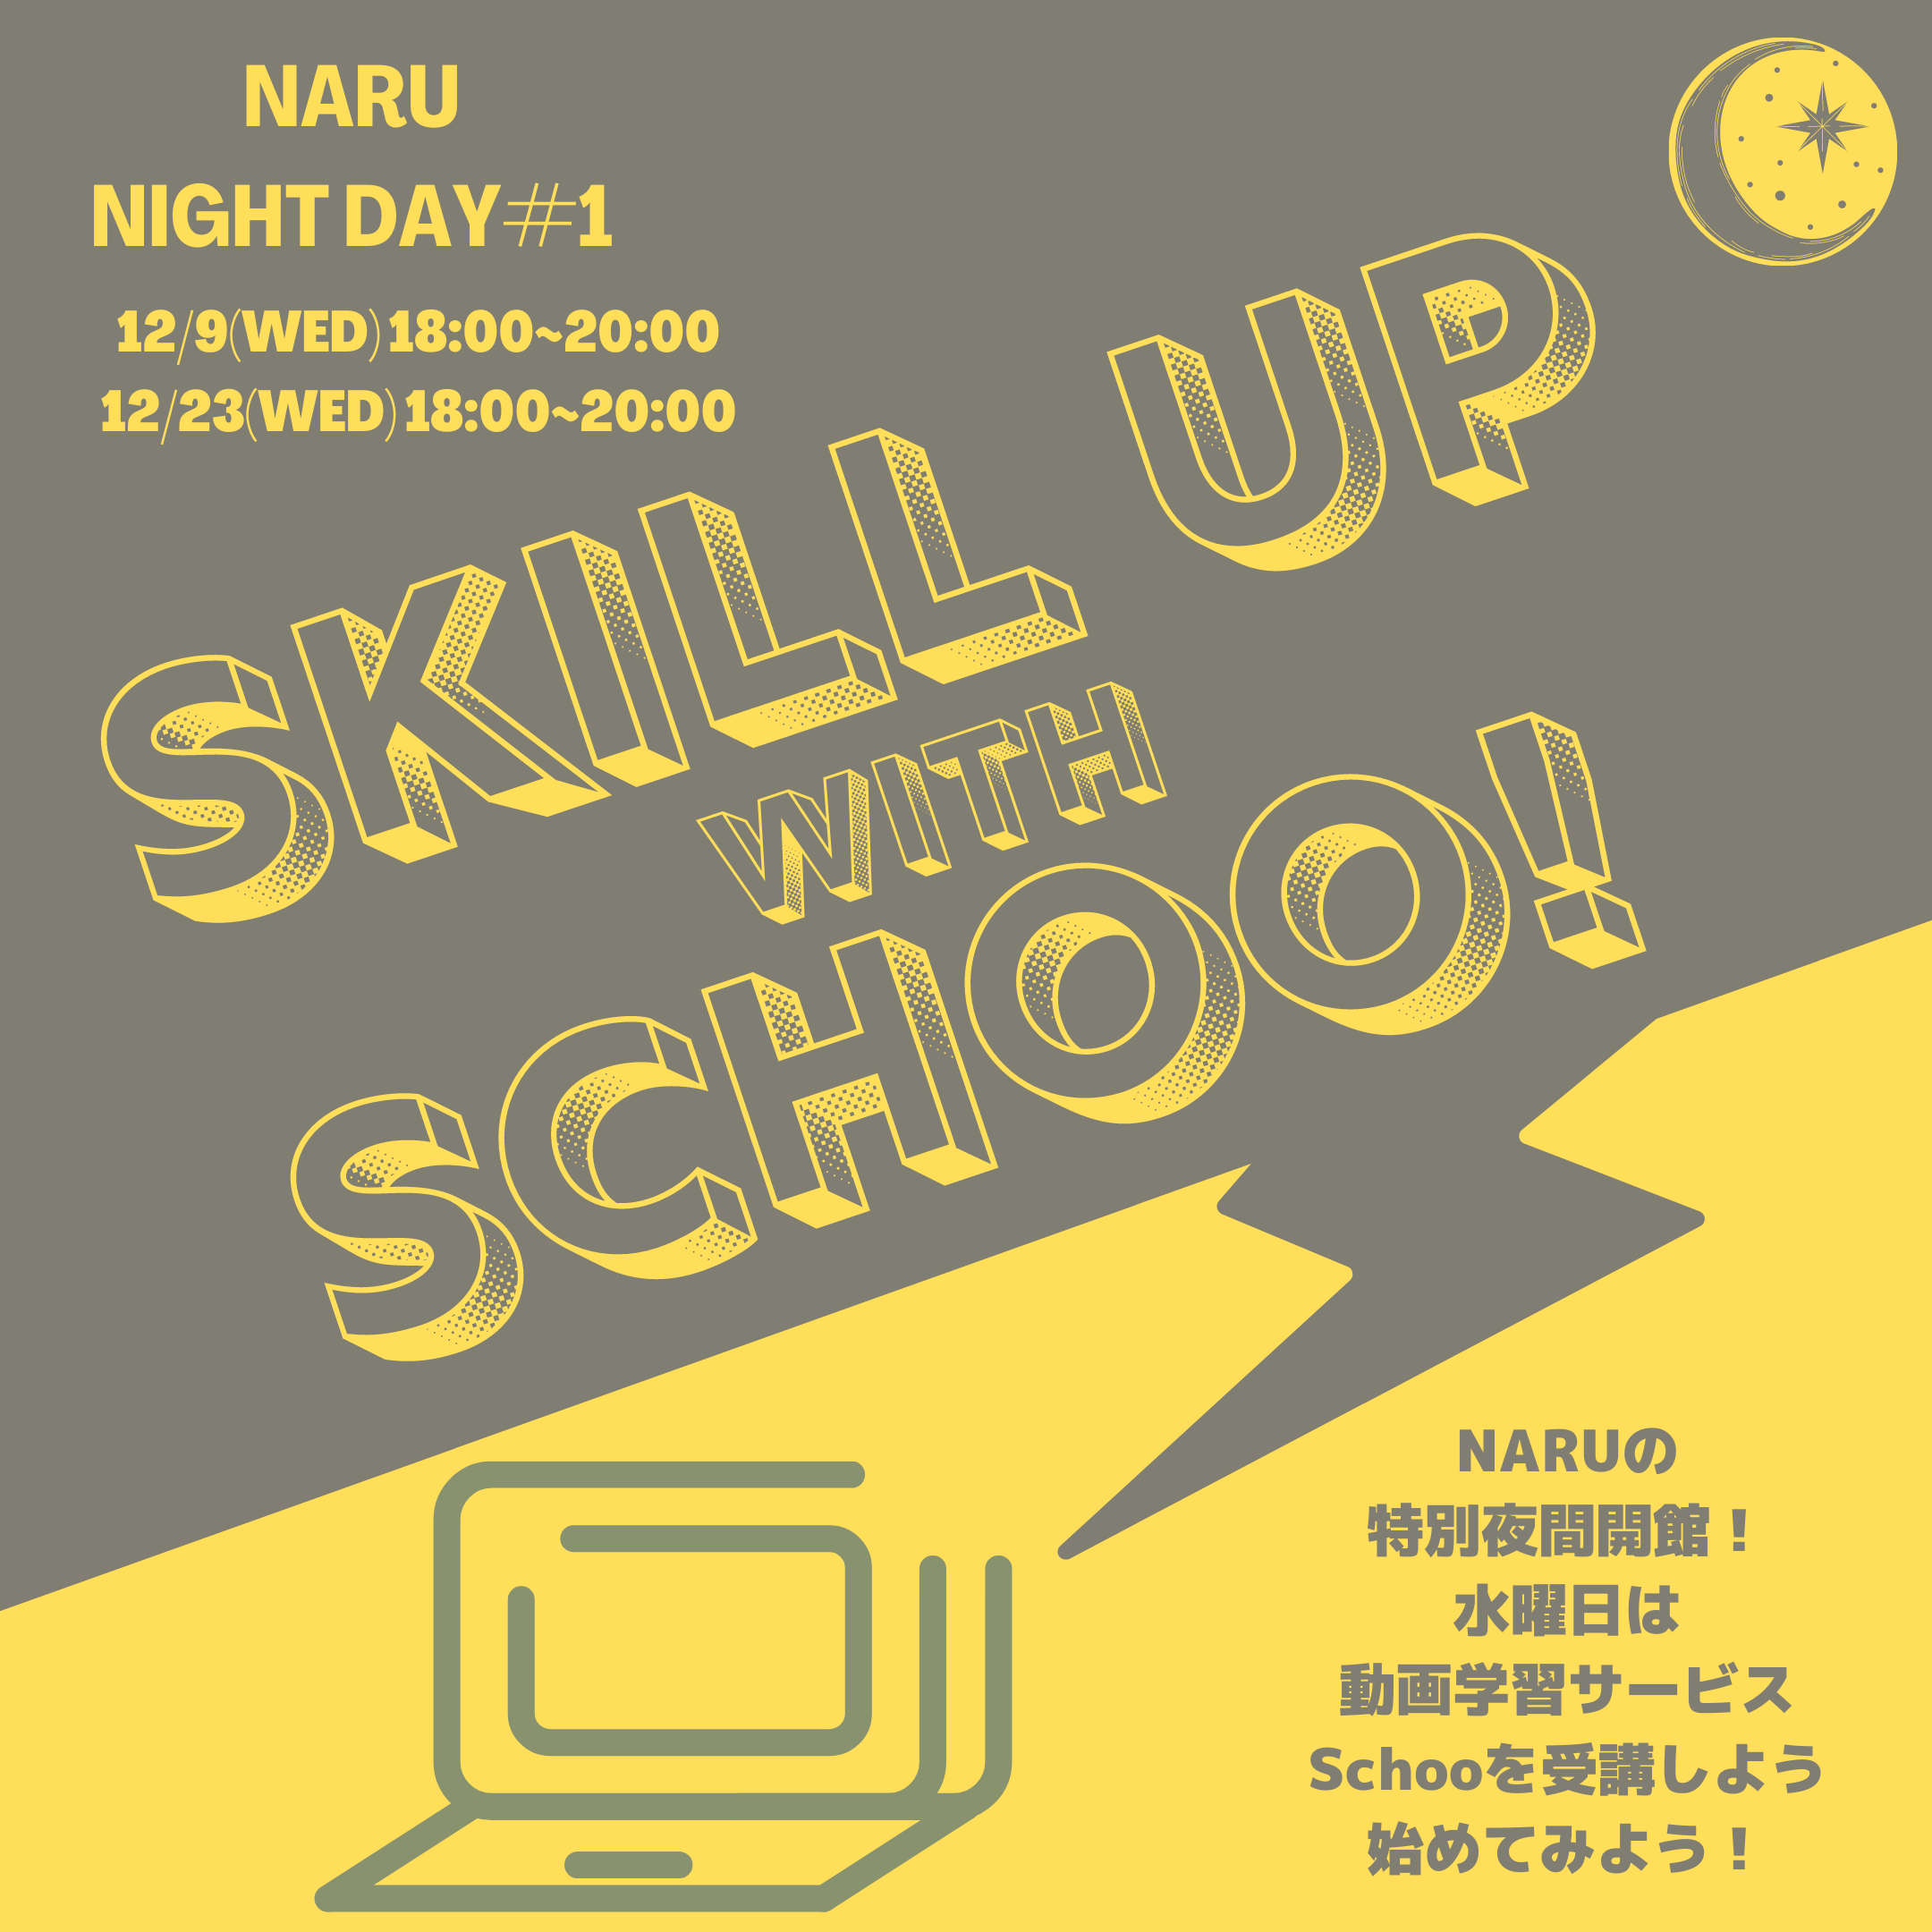 【終了】NARU NightDay#1水曜日はSchooの日！